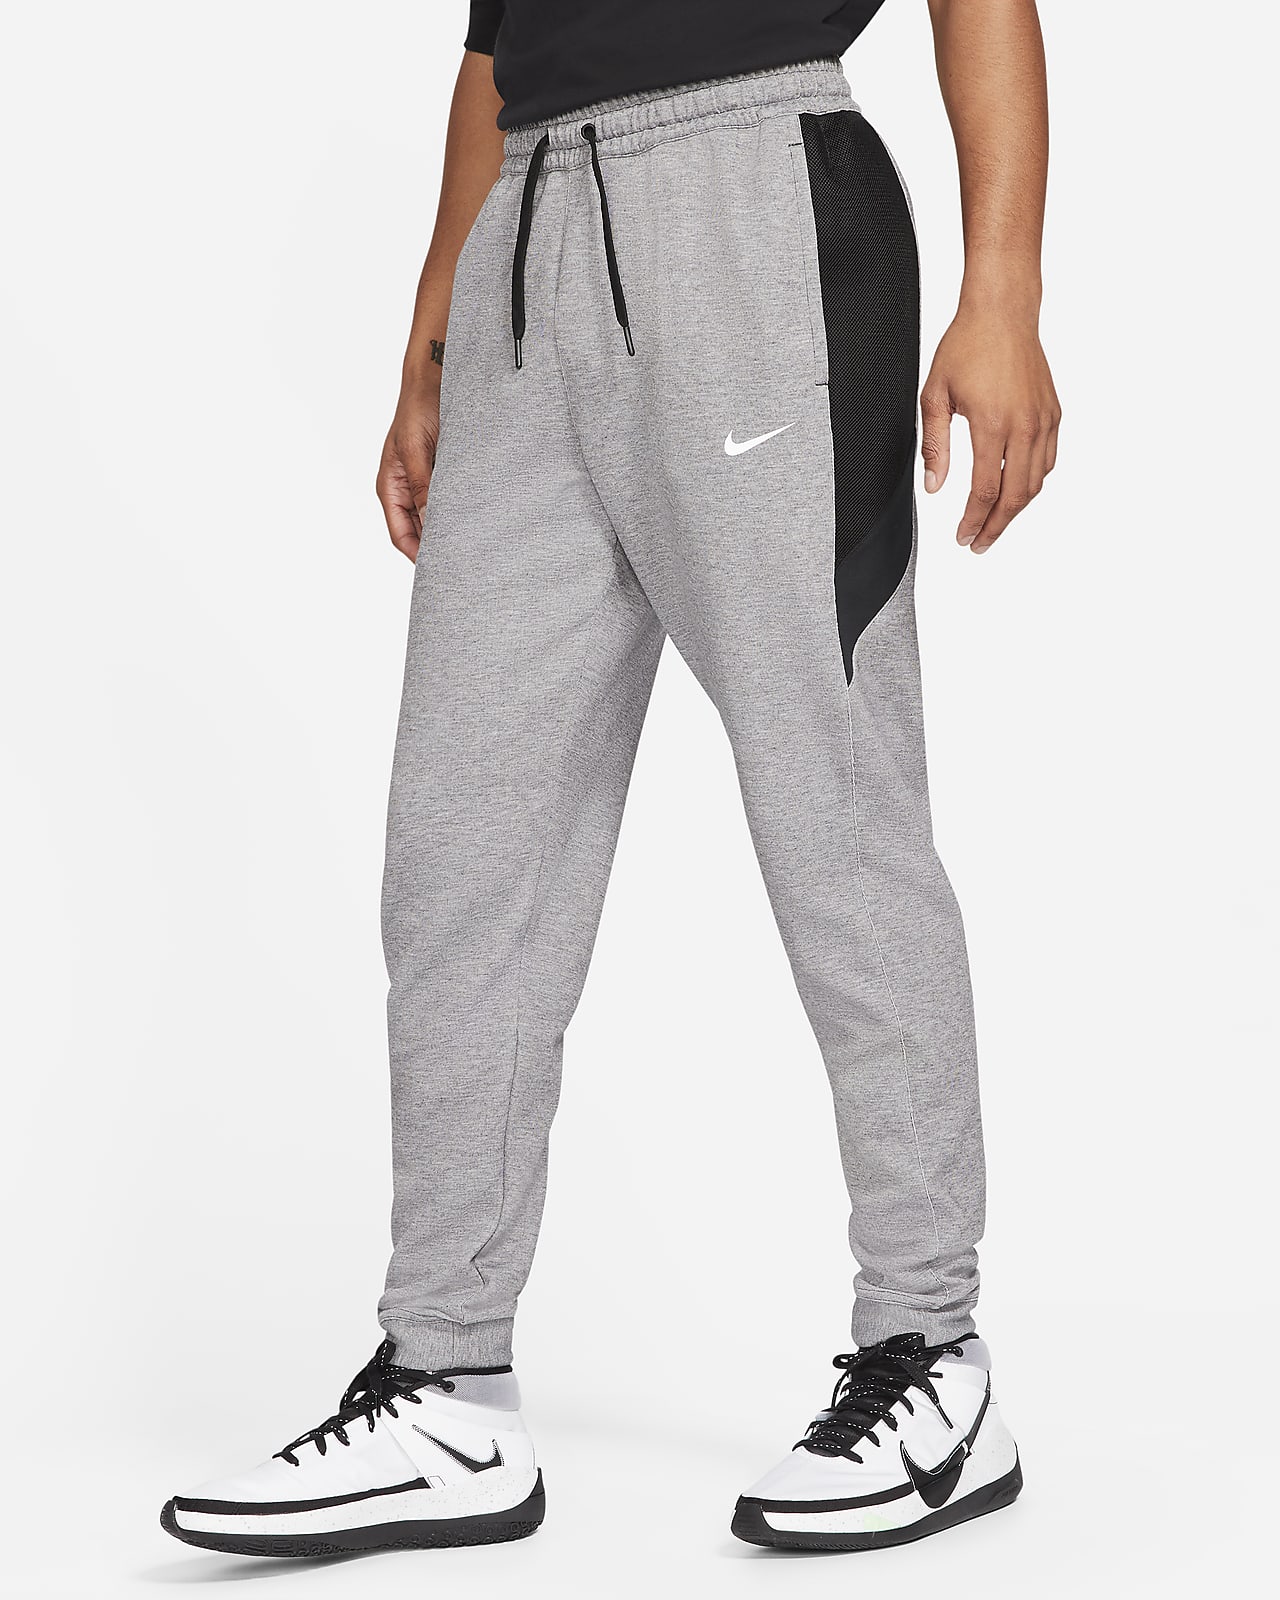 Pantalones de básquetbol hombre Nike Dri-FIT Showtime.